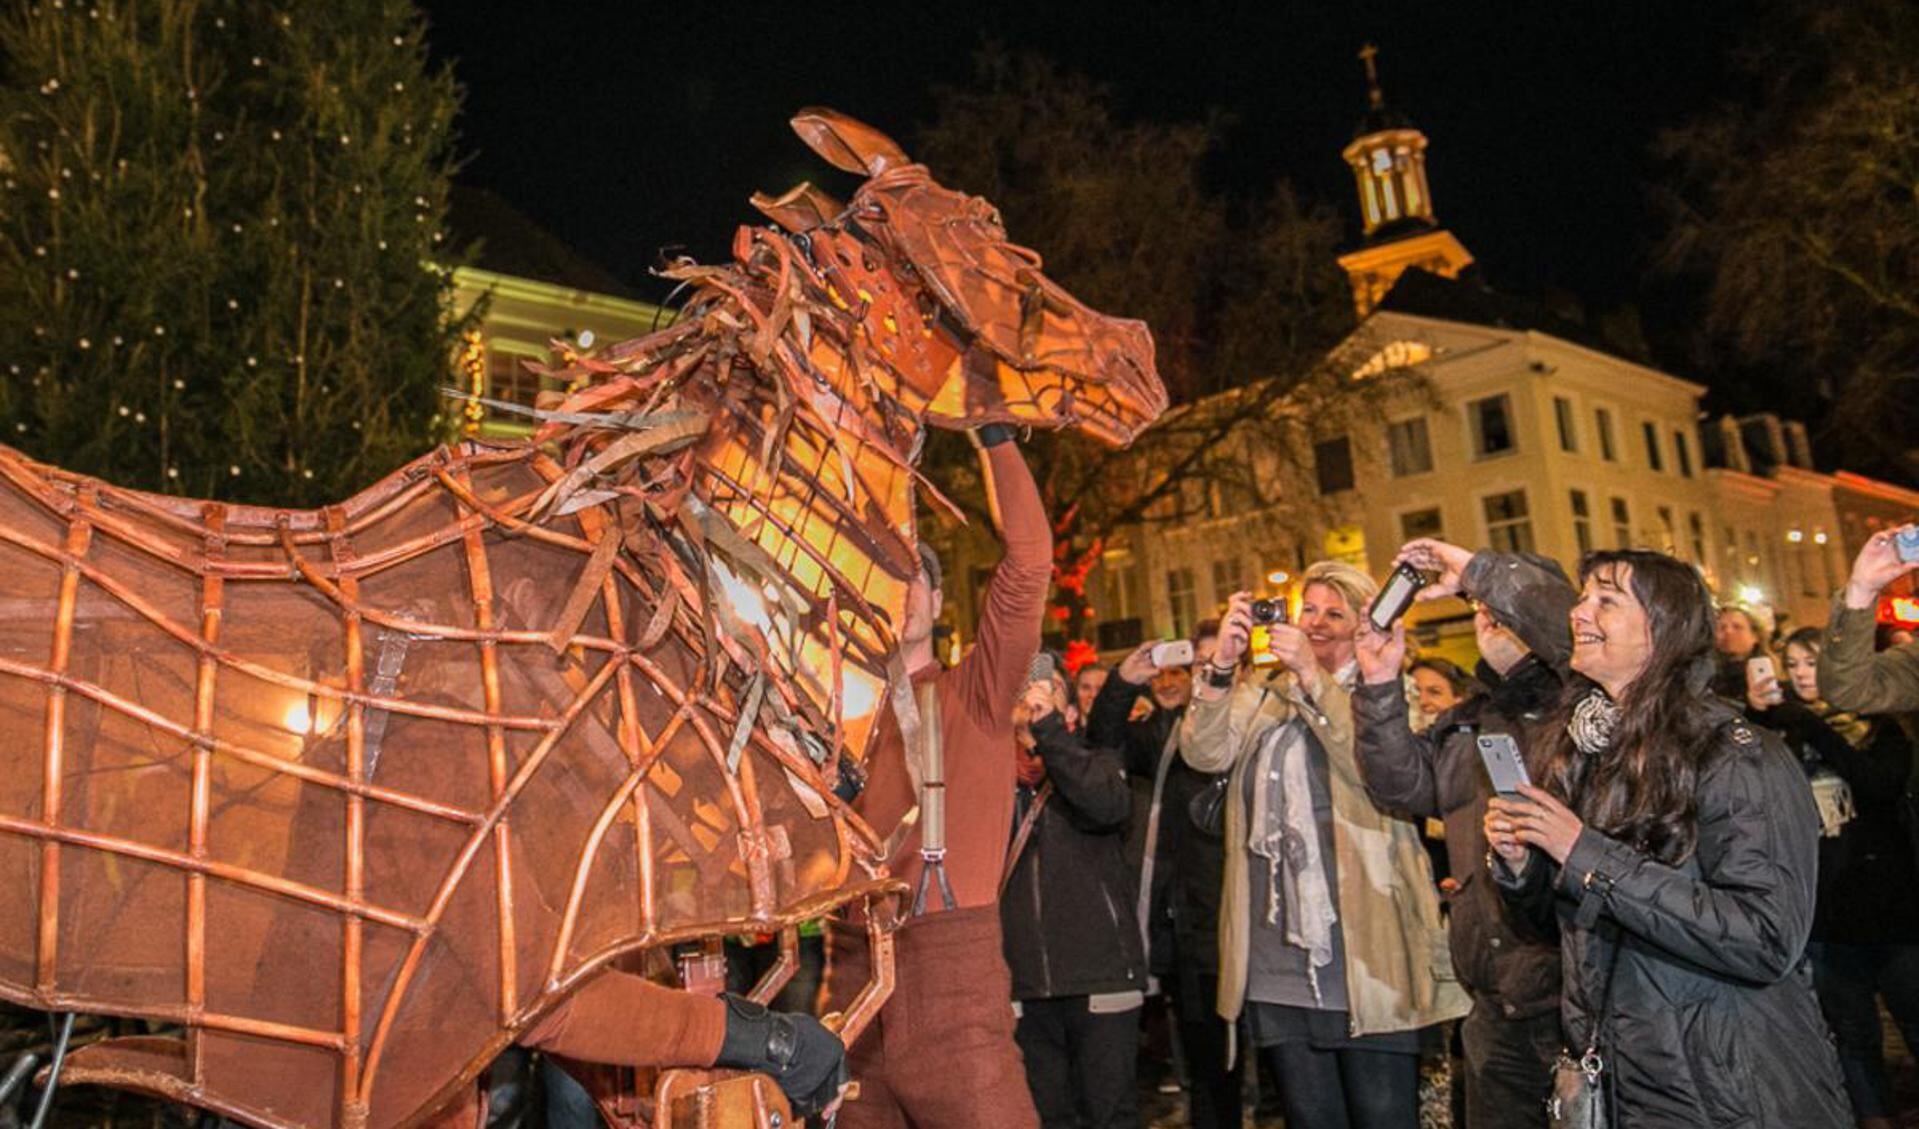 De cast van Warhorse hielp loco-burgemeester Bergkamp met het aansteken van de lichtjes van de kerstboom op de Grote Markt.